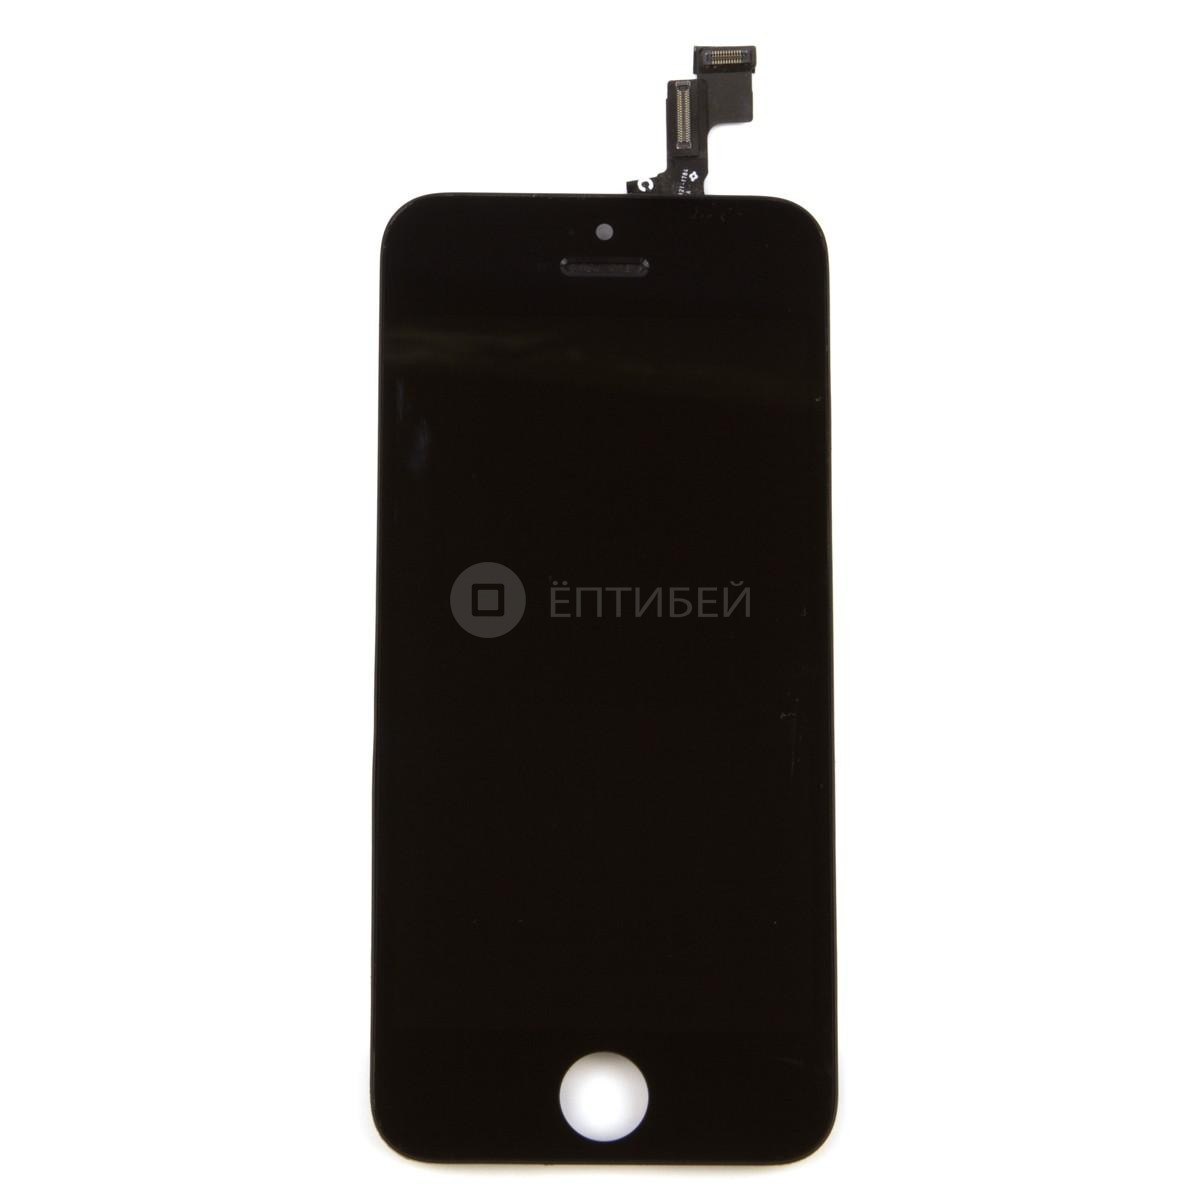 Дисплей в сборе (тач стекло и матрица) для iPhone 5S, SE оригинал черный  для самостоятельной замены с инструкцией